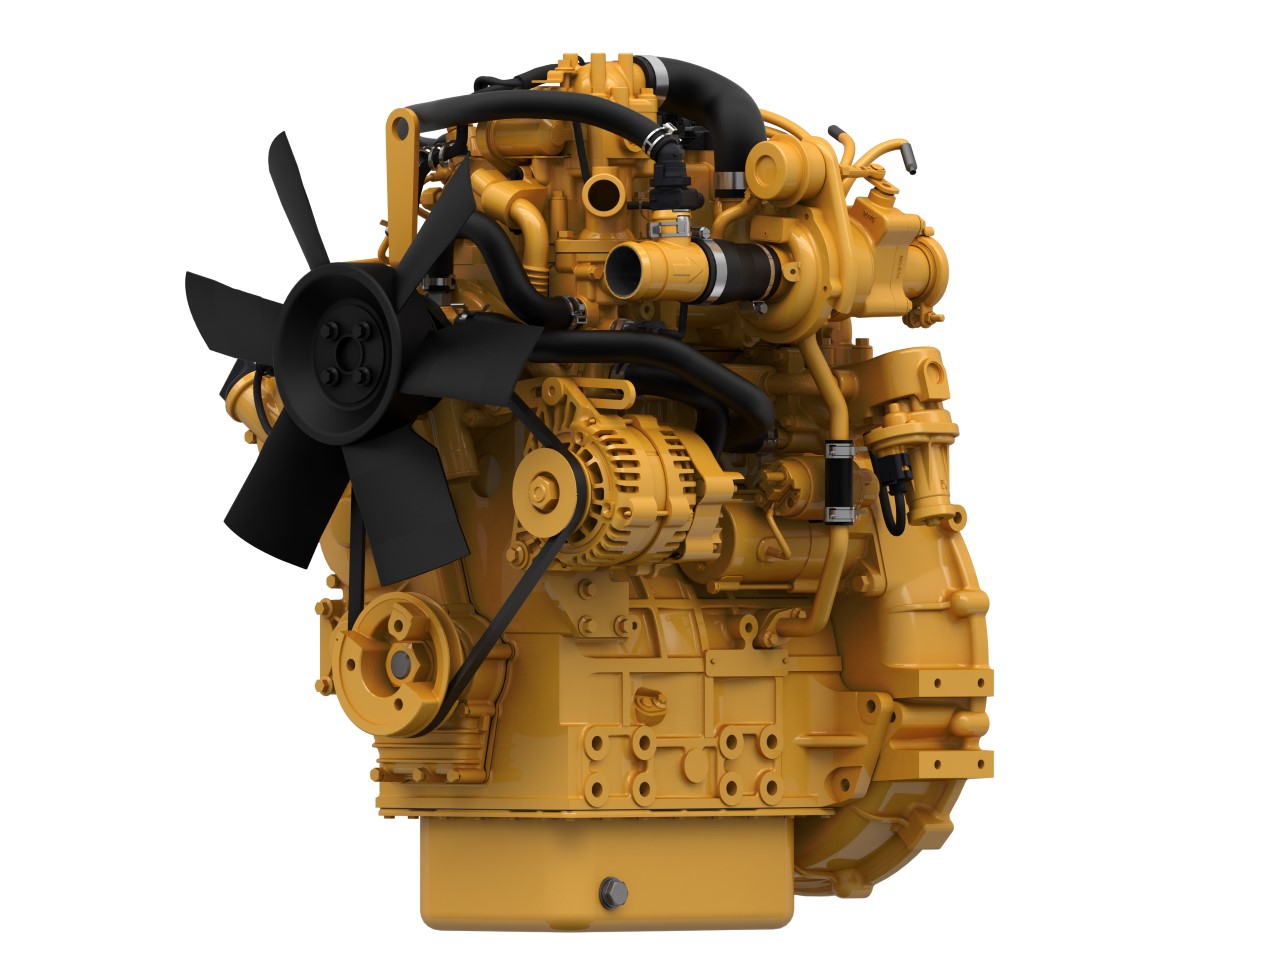 Priemyslený motor Cat C1.7 - 18,4-36 kW